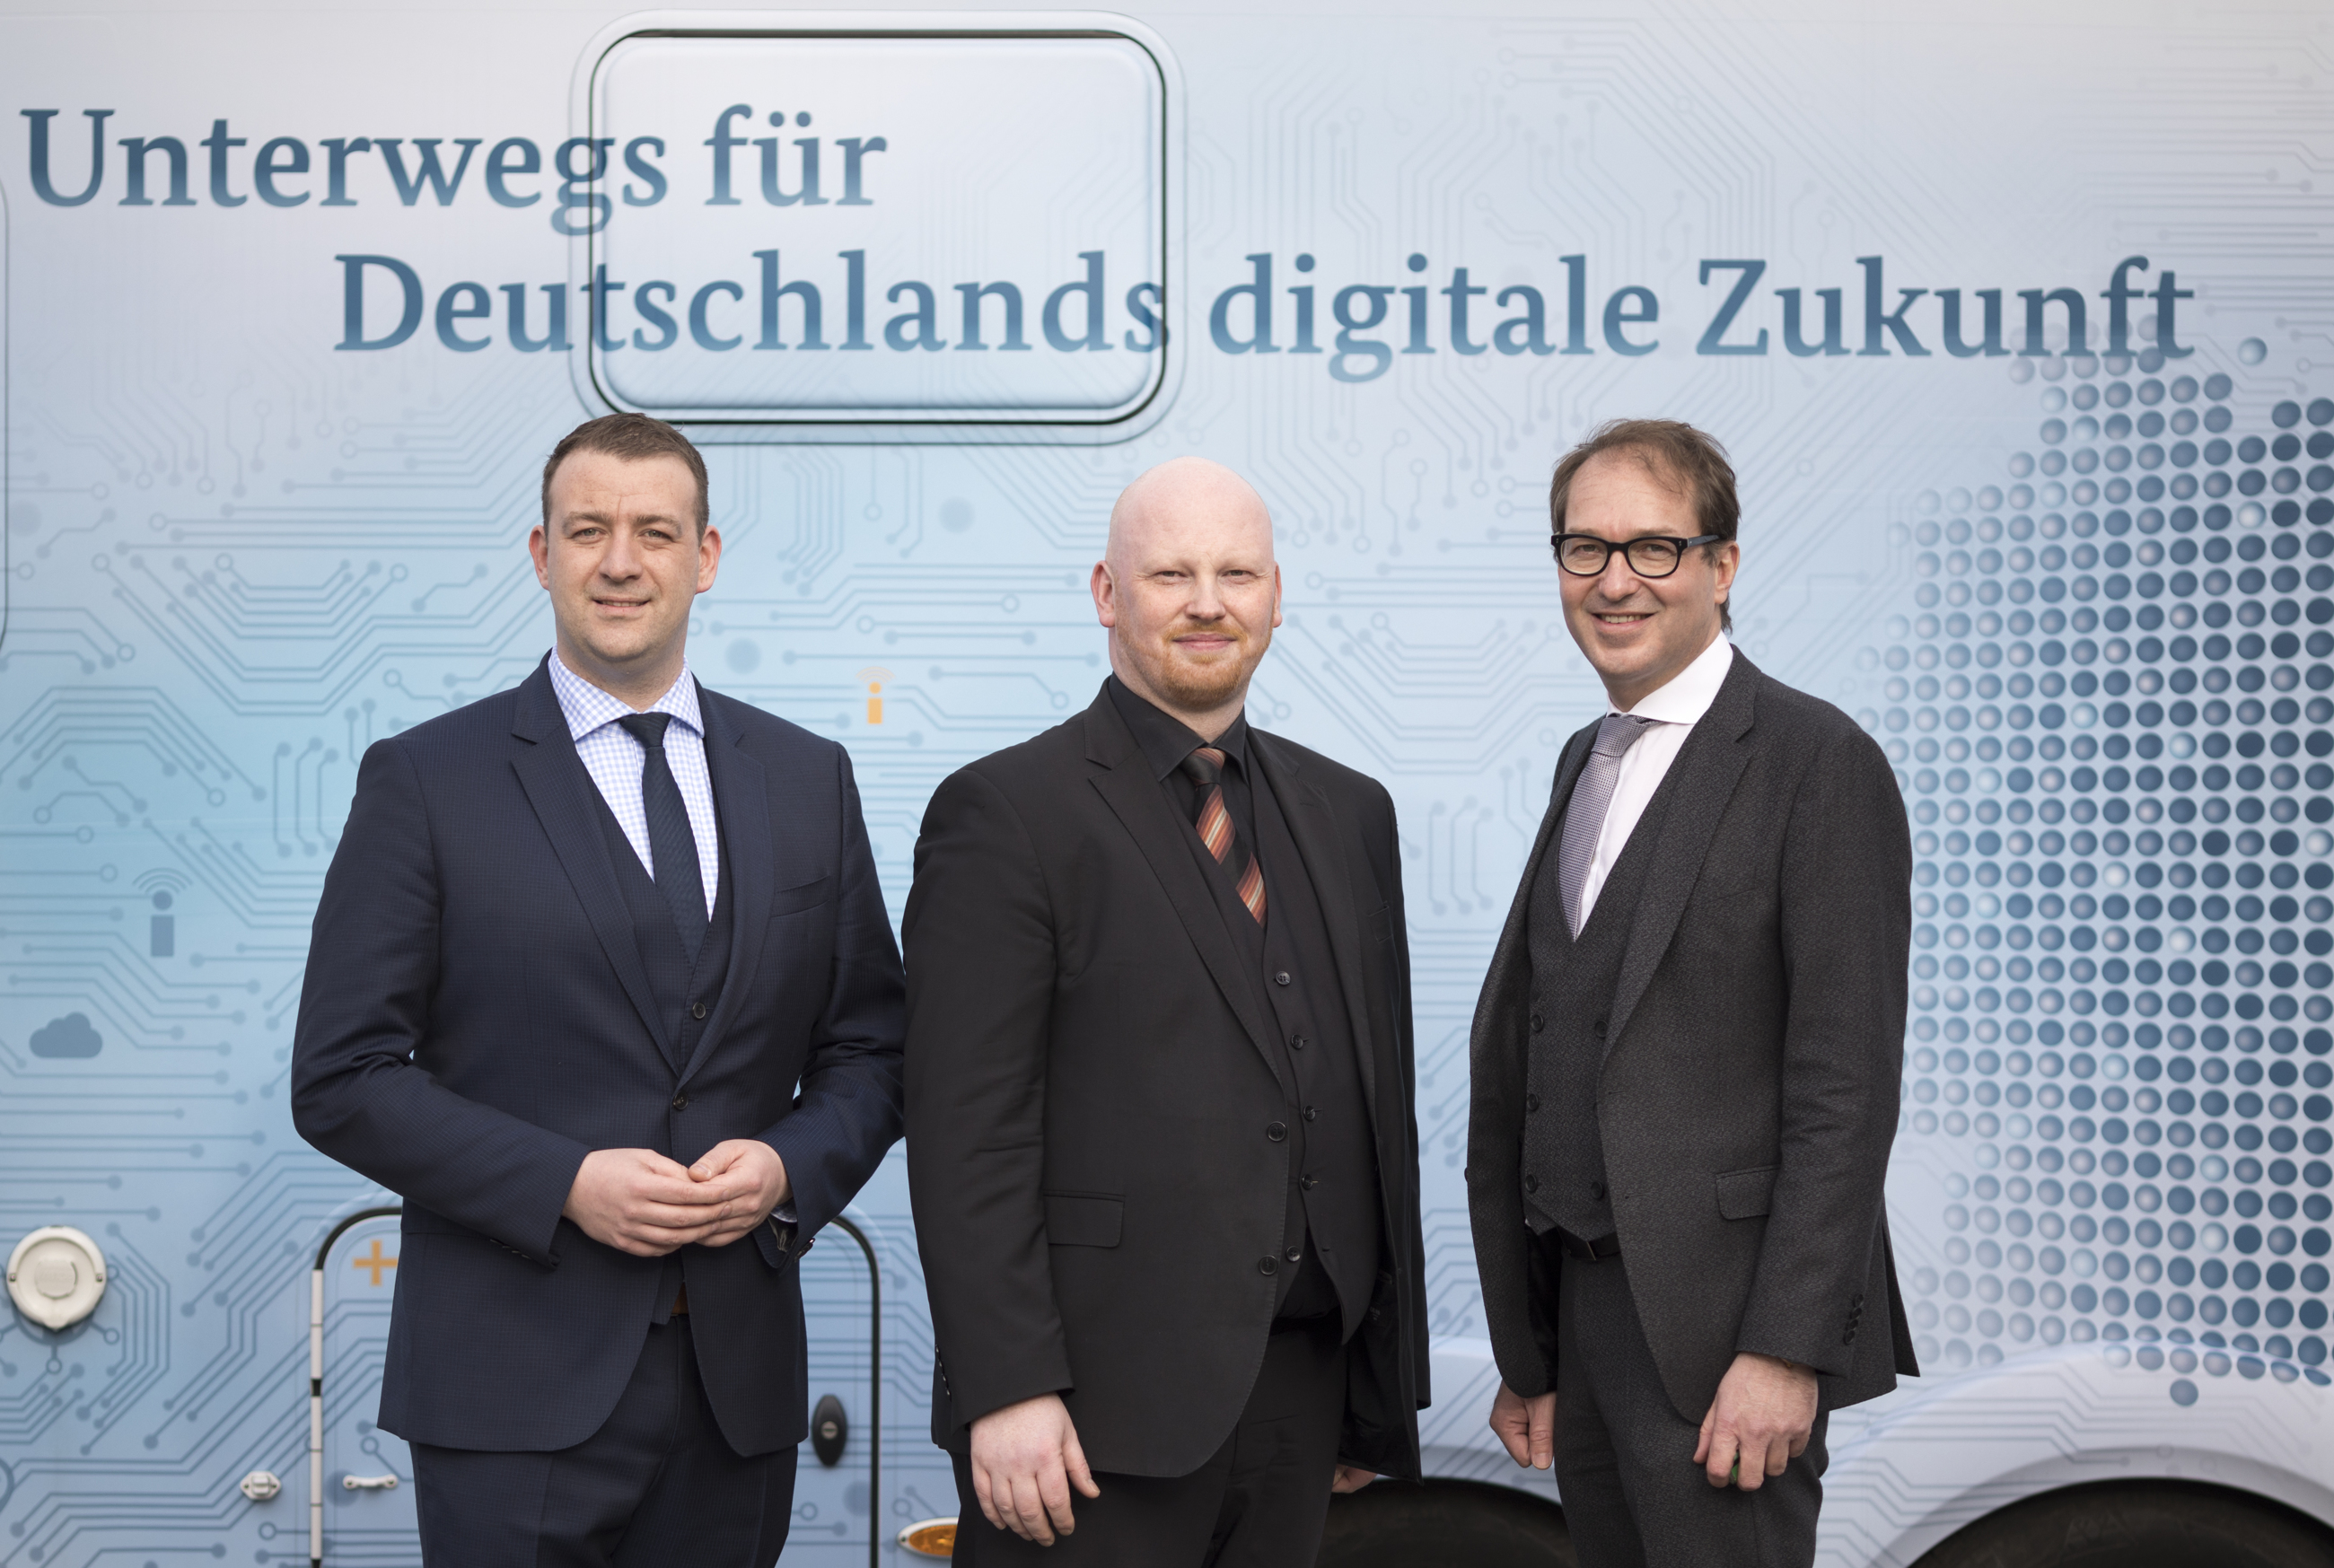 Unterwegs für Deutschlands digitale Zukunft in Weilheim